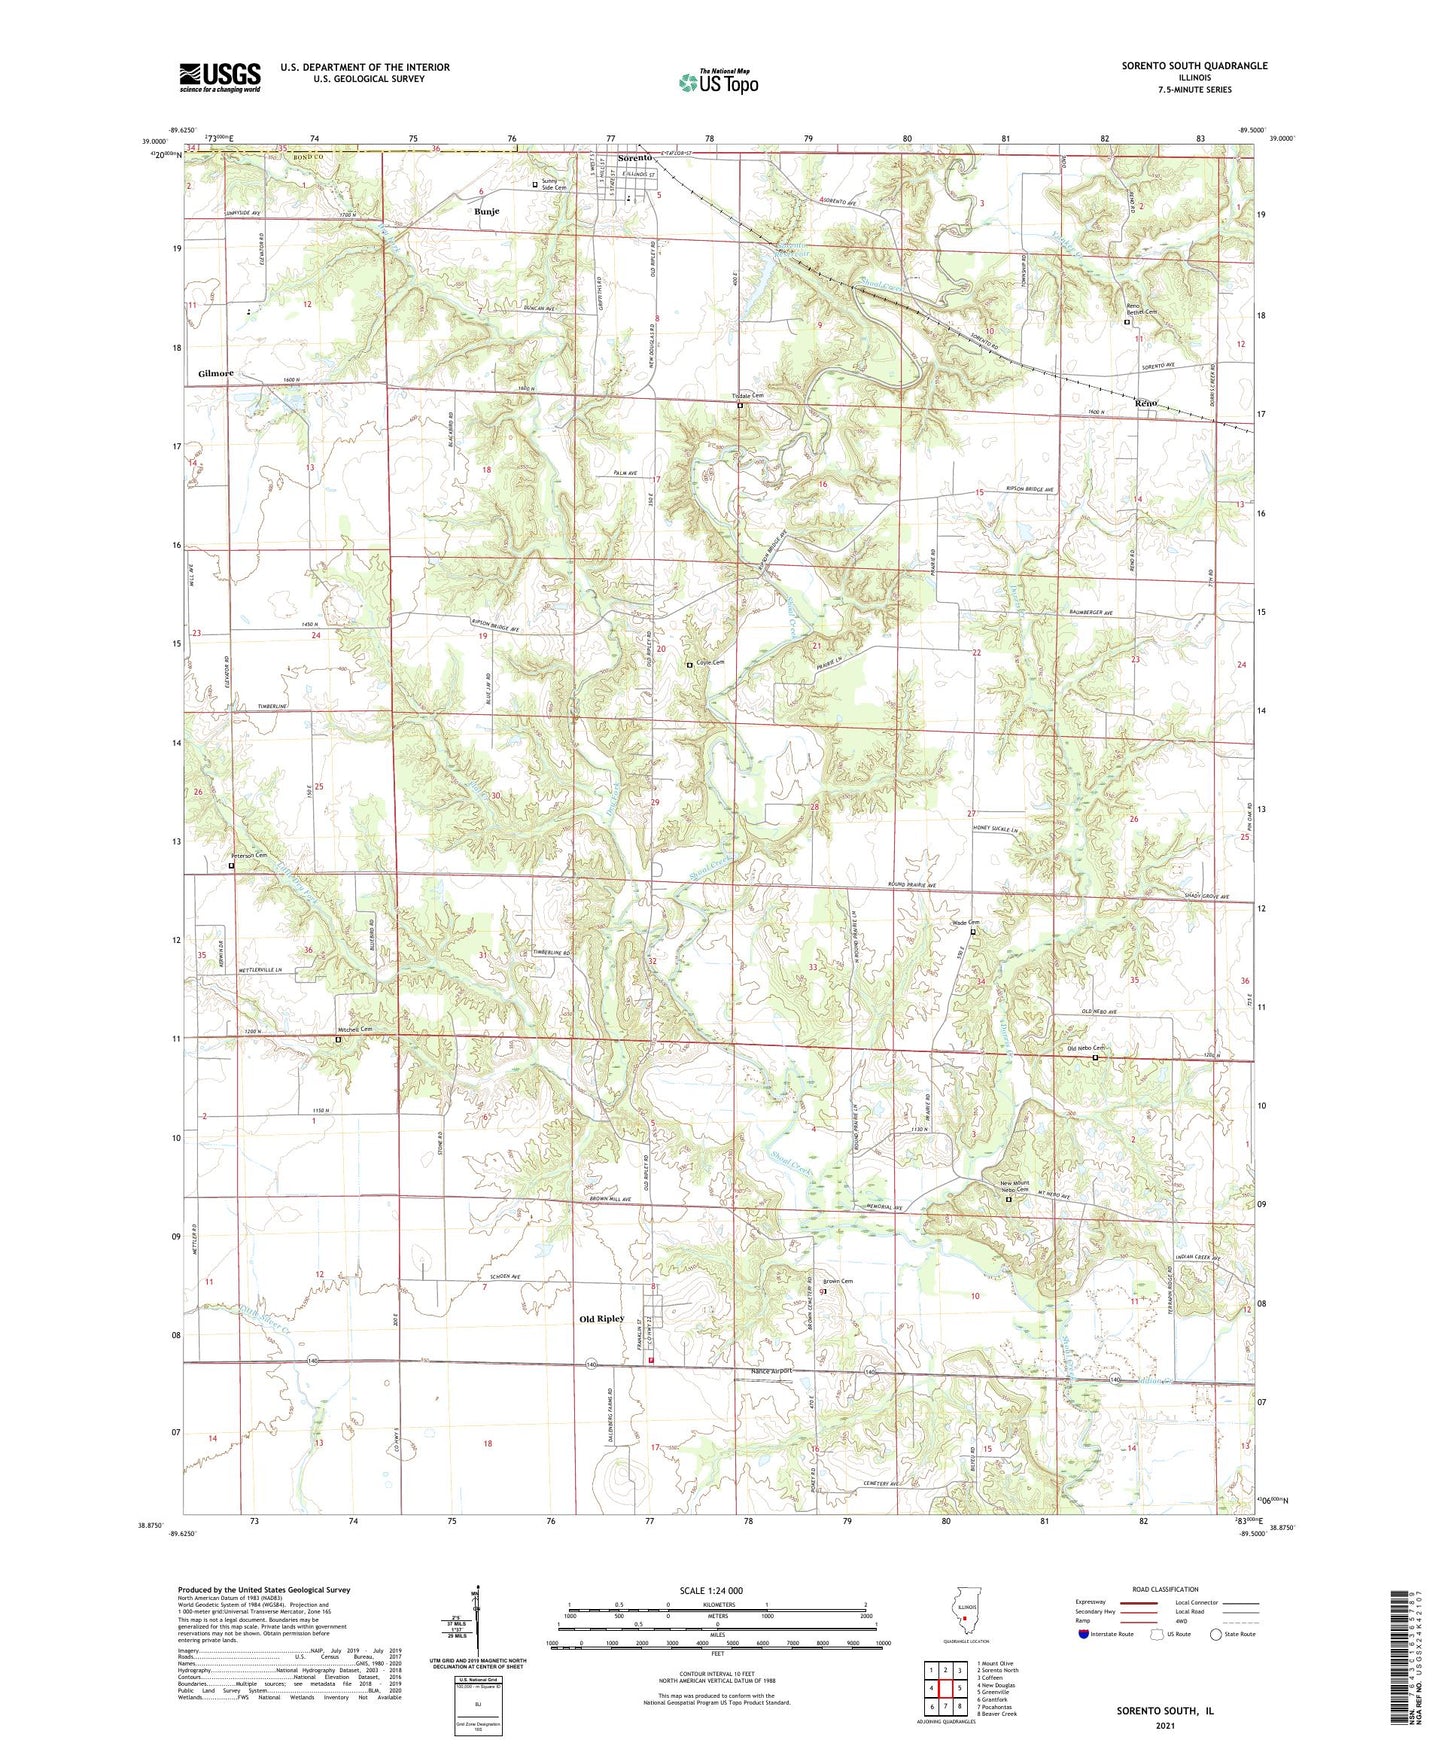 Sorento South Illinois US Topo Map Image